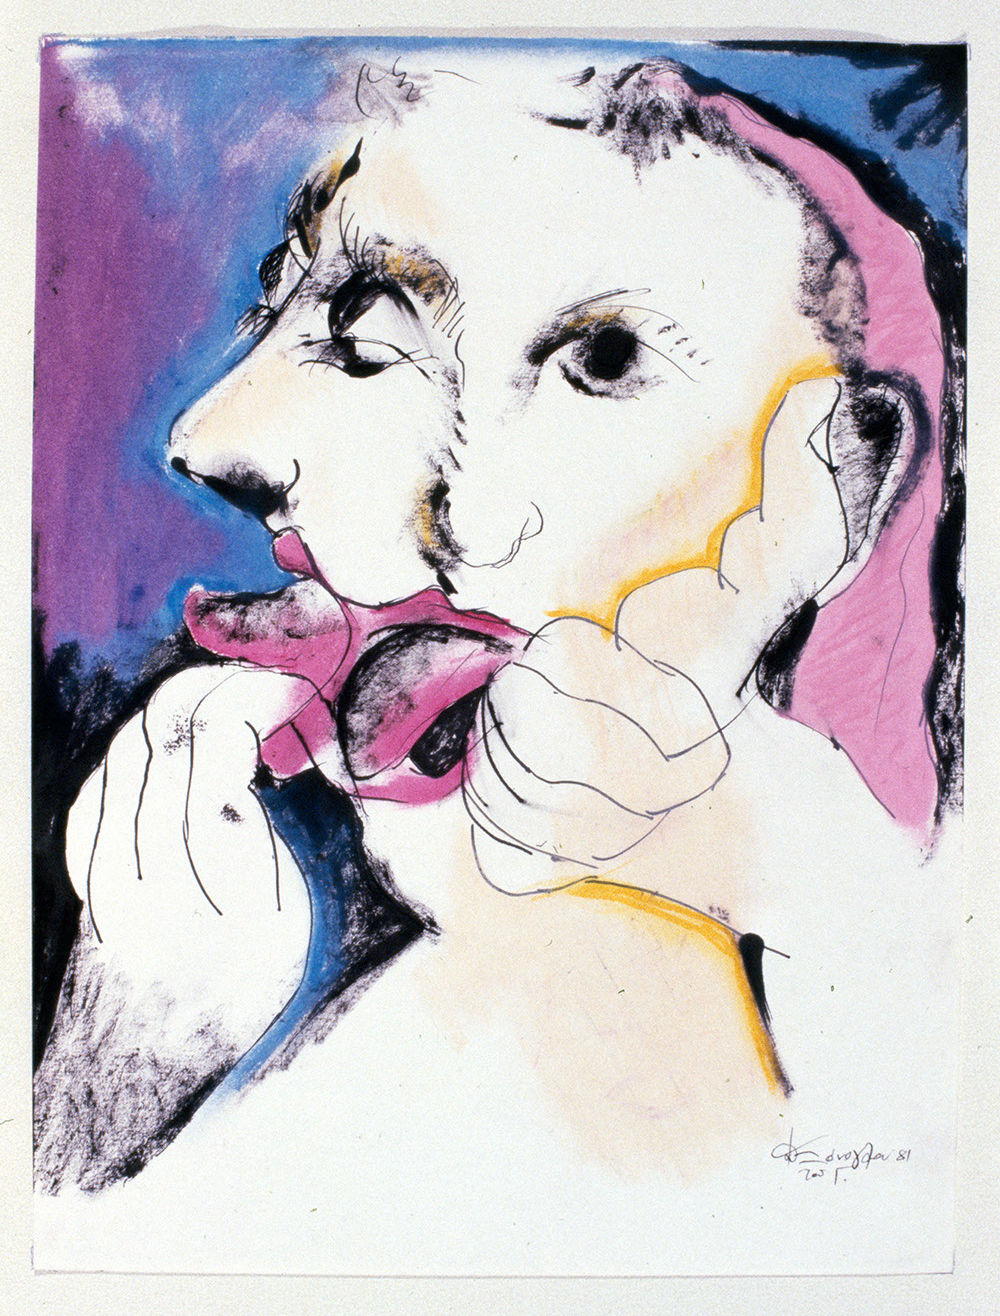 Τιτλος: Το Σκοτεινό Πρόσωπο της Αγάπης 15
Υλικά: Μεικτή τεχνική (Μελάνι, Λαδοπαστέλ σε χαρτί)
Μέγεθος: 50x37 cm
Έτος: 1981